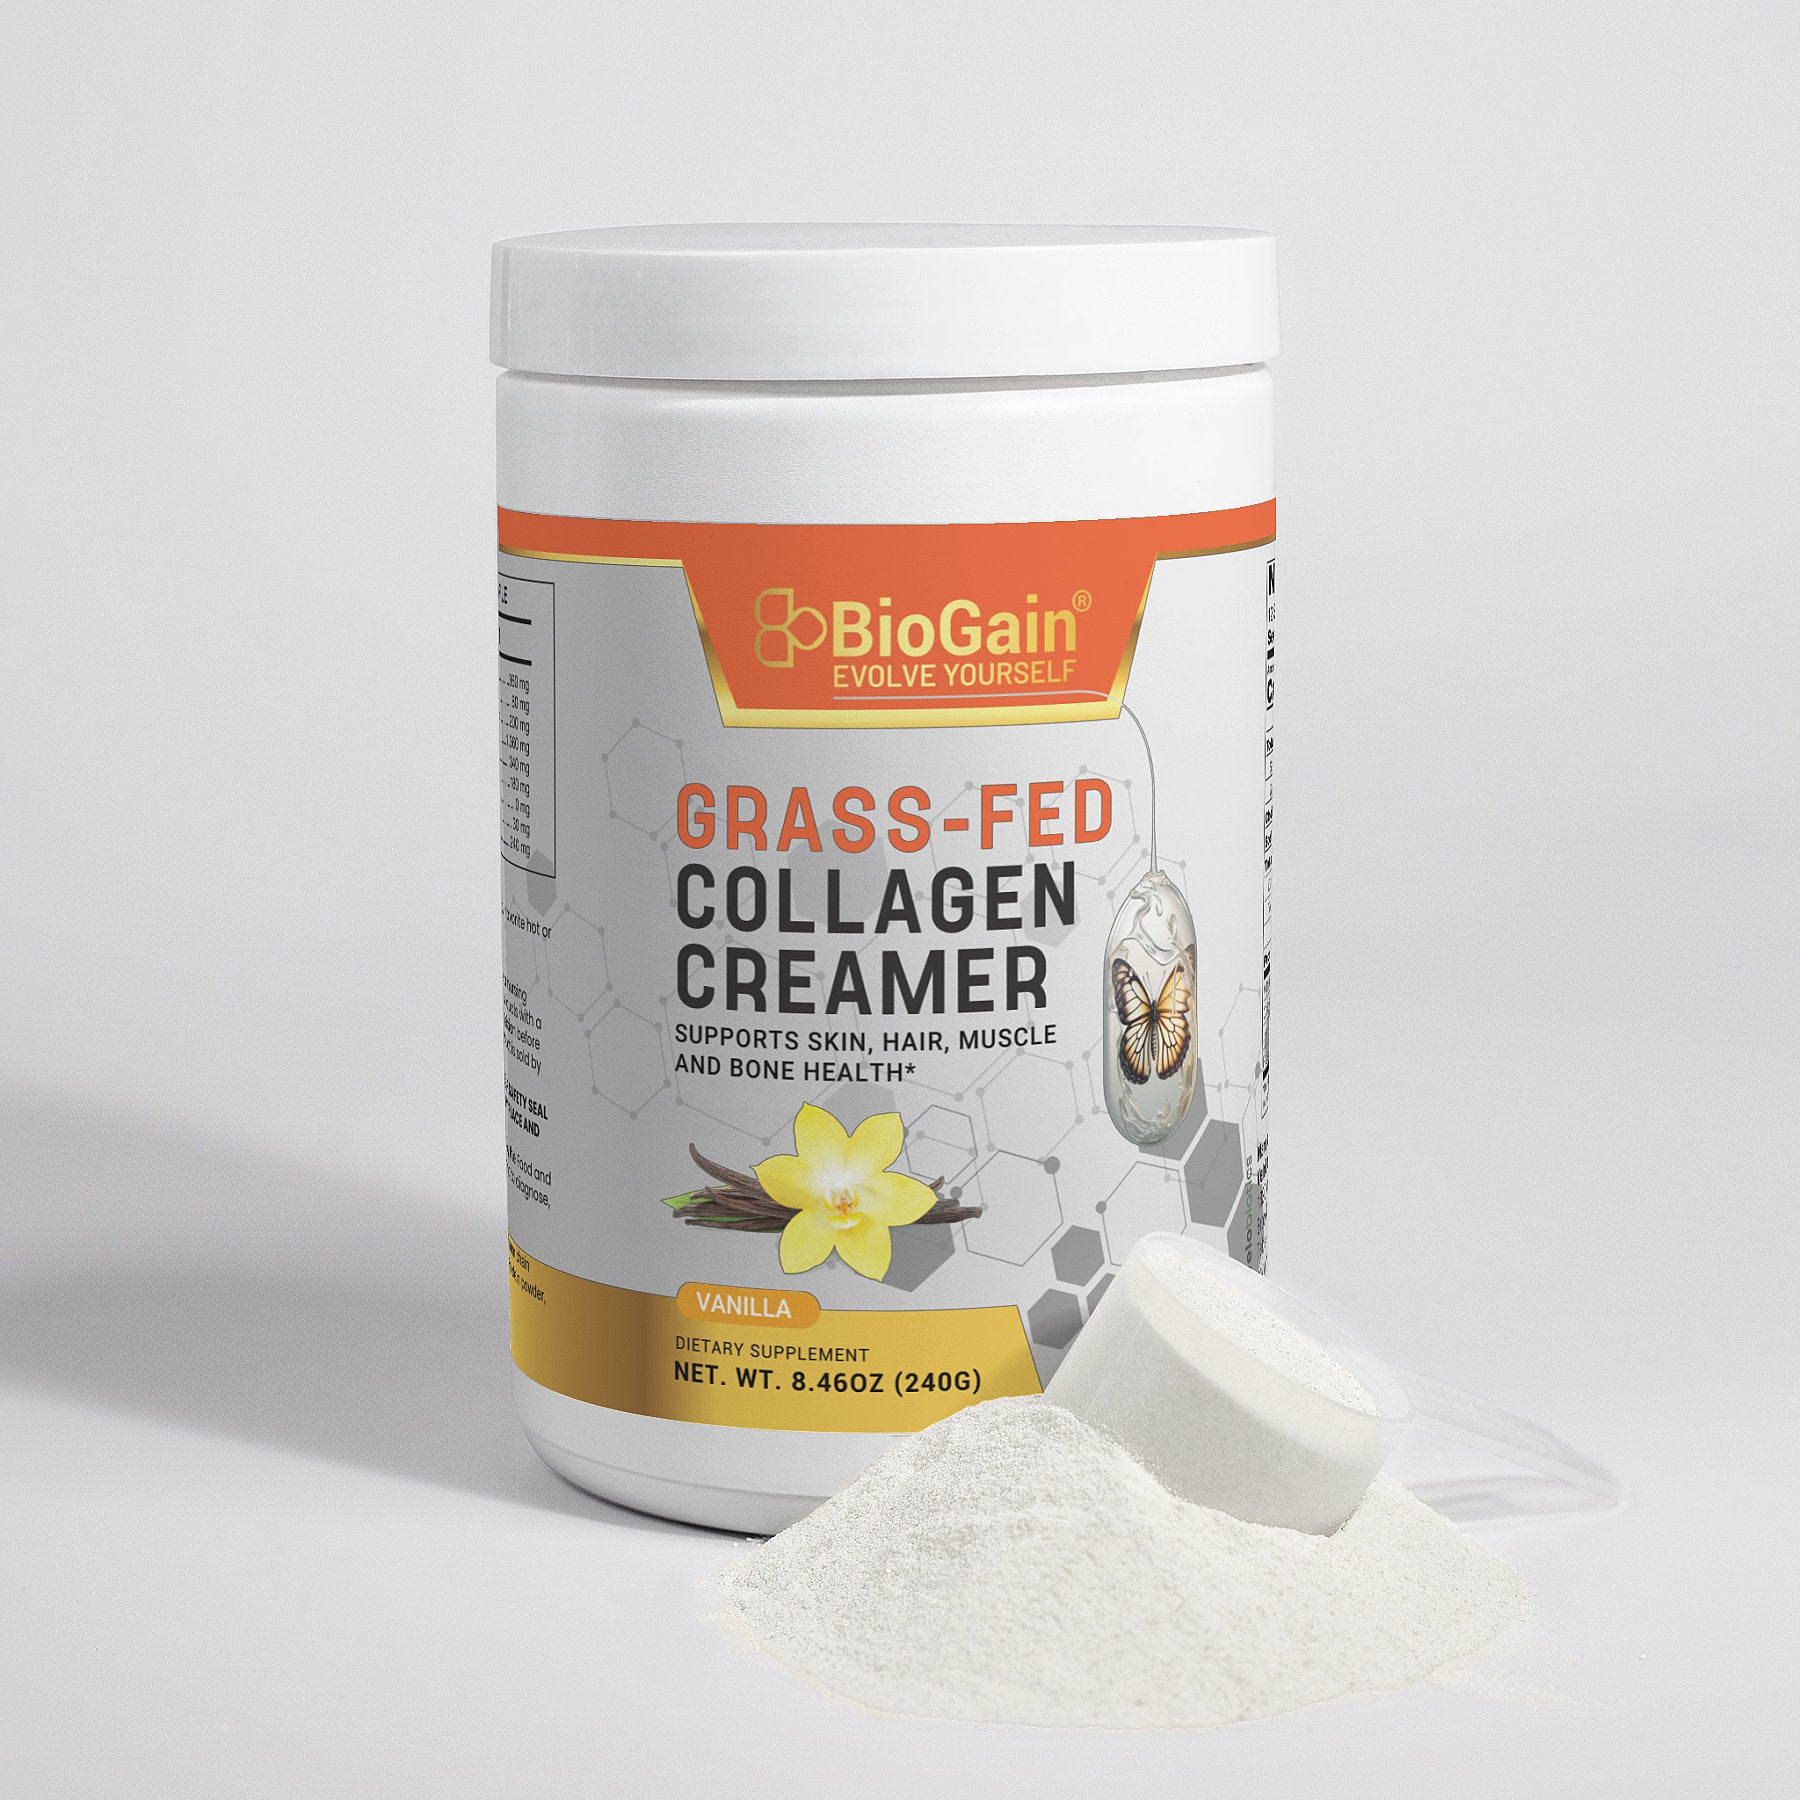 BioGain Grass-Fed Collagen Creamer (Vanilla)